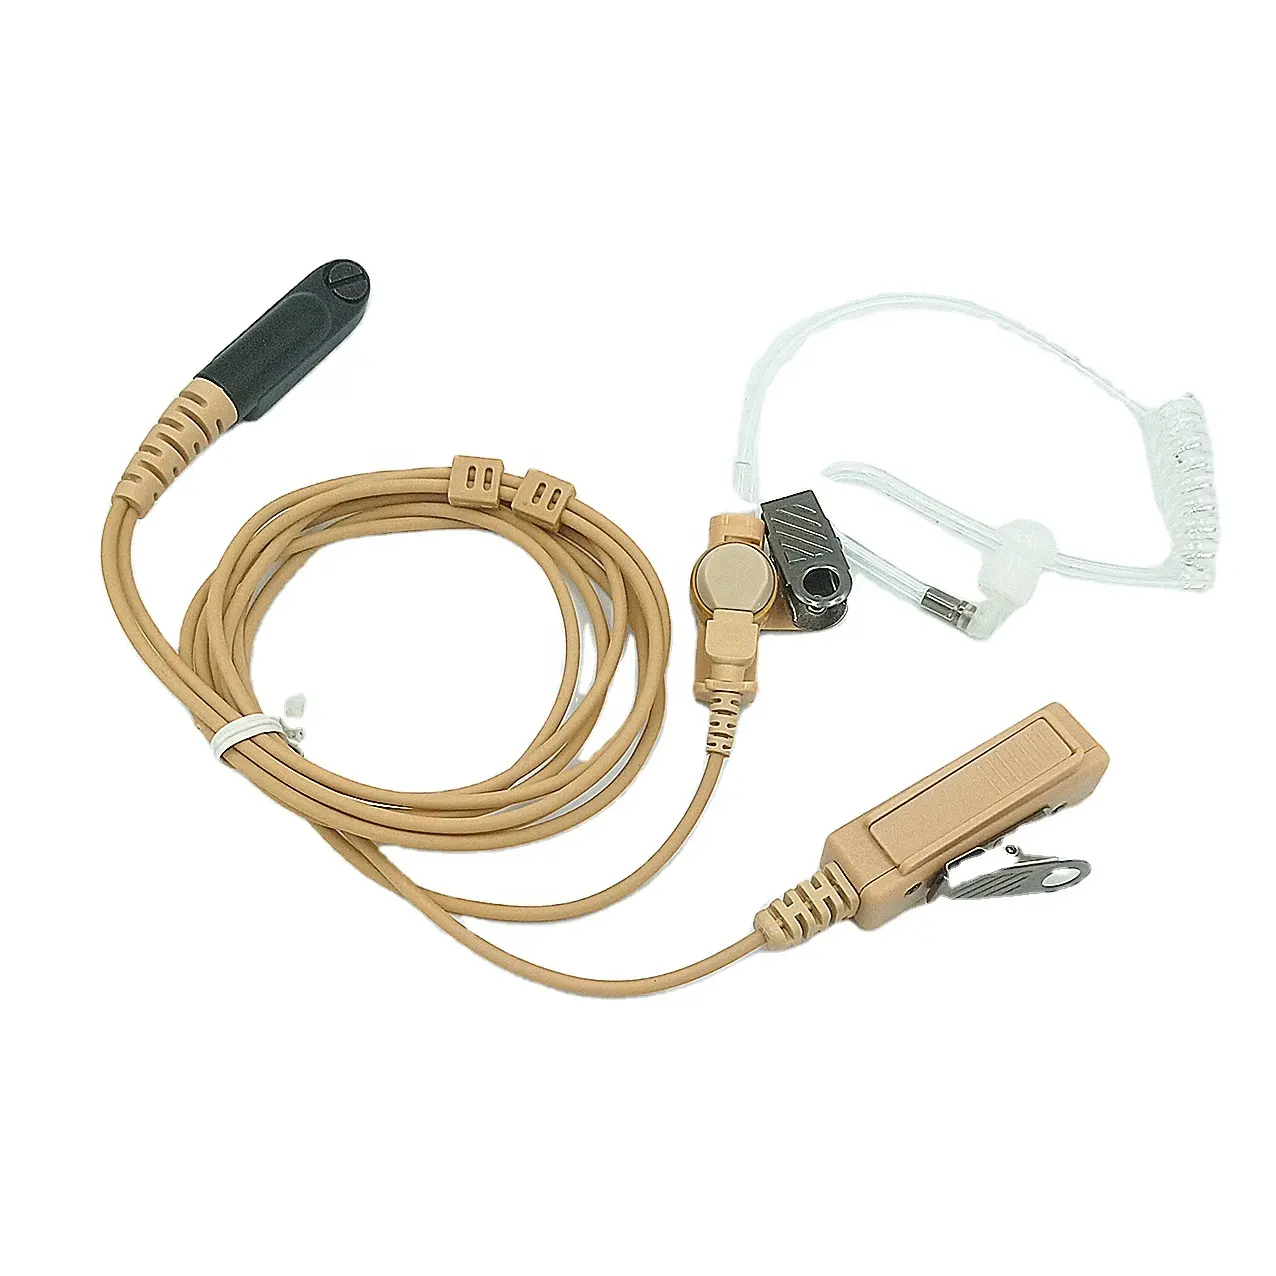 Ac142 fone de ouvido com tubo acústico bege, para motorola radio gp328plus gp338plus ex500 ex600 ex600xls